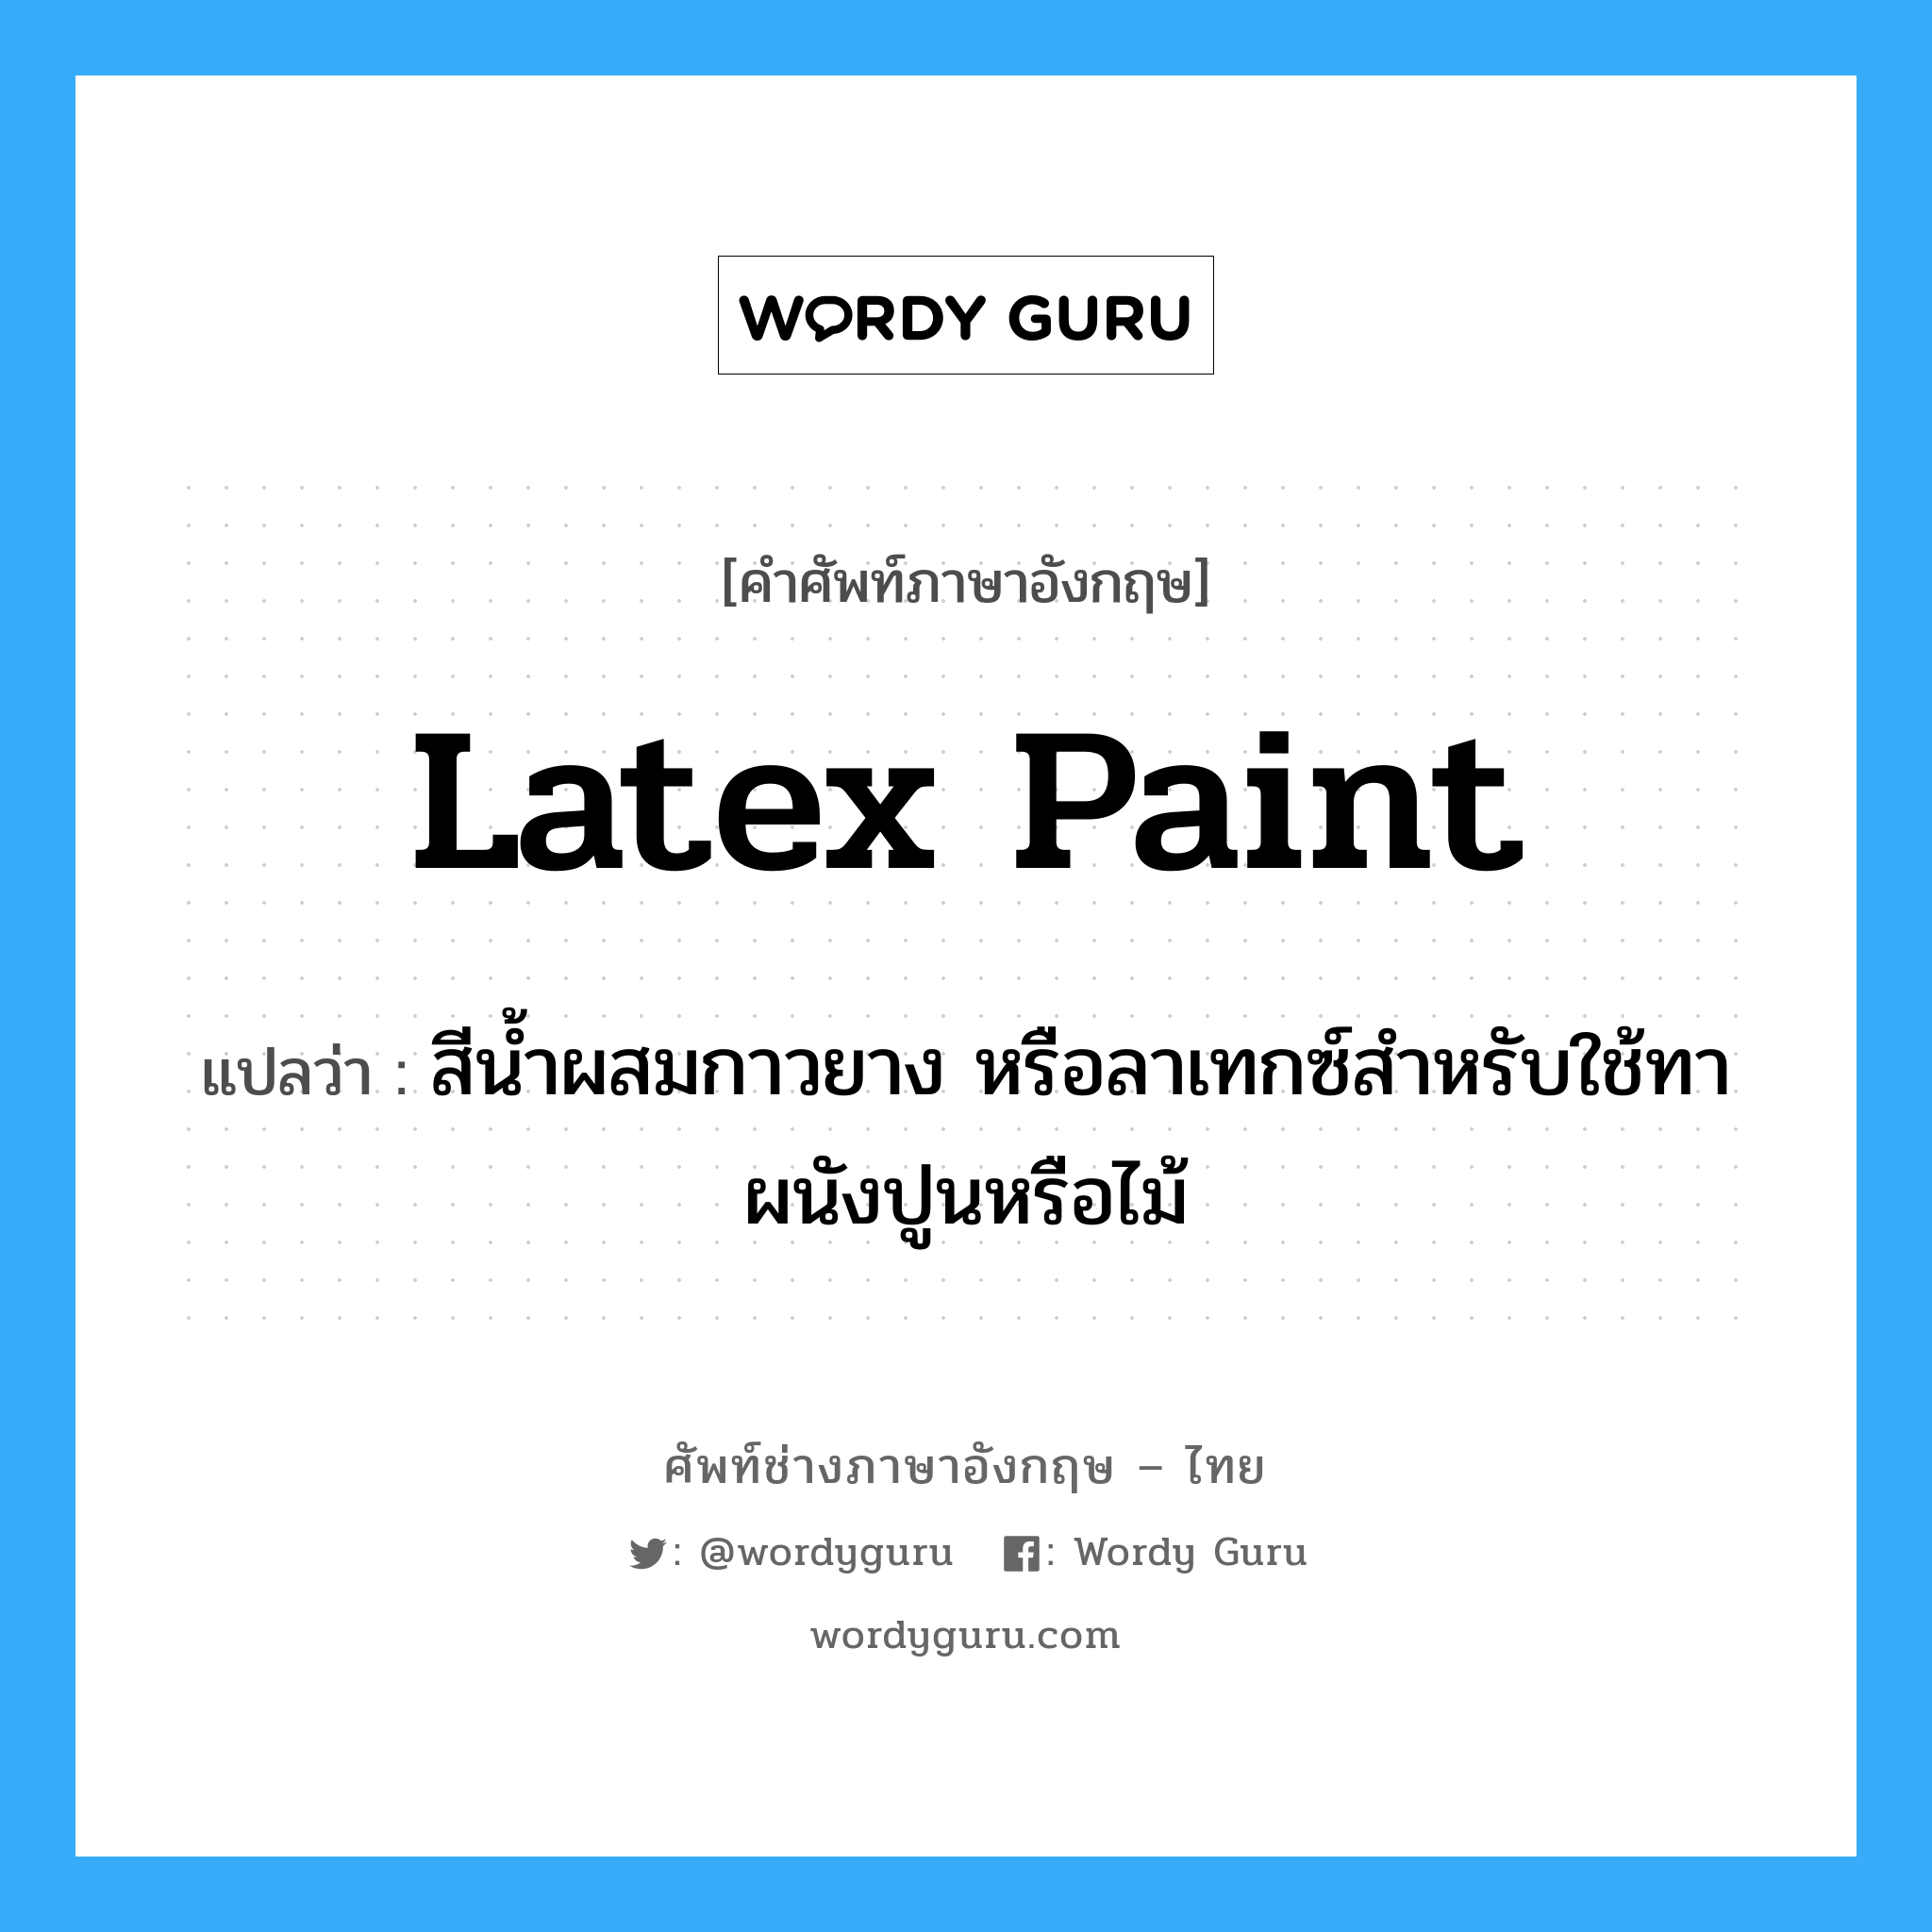 latex paint แปลว่า?, คำศัพท์ช่างภาษาอังกฤษ - ไทย latex paint คำศัพท์ภาษาอังกฤษ latex paint แปลว่า สีน้ำผสมกาวยาง หรือลาเทกซ์สำหรับใช้ทาผนังปูนหรือไม้